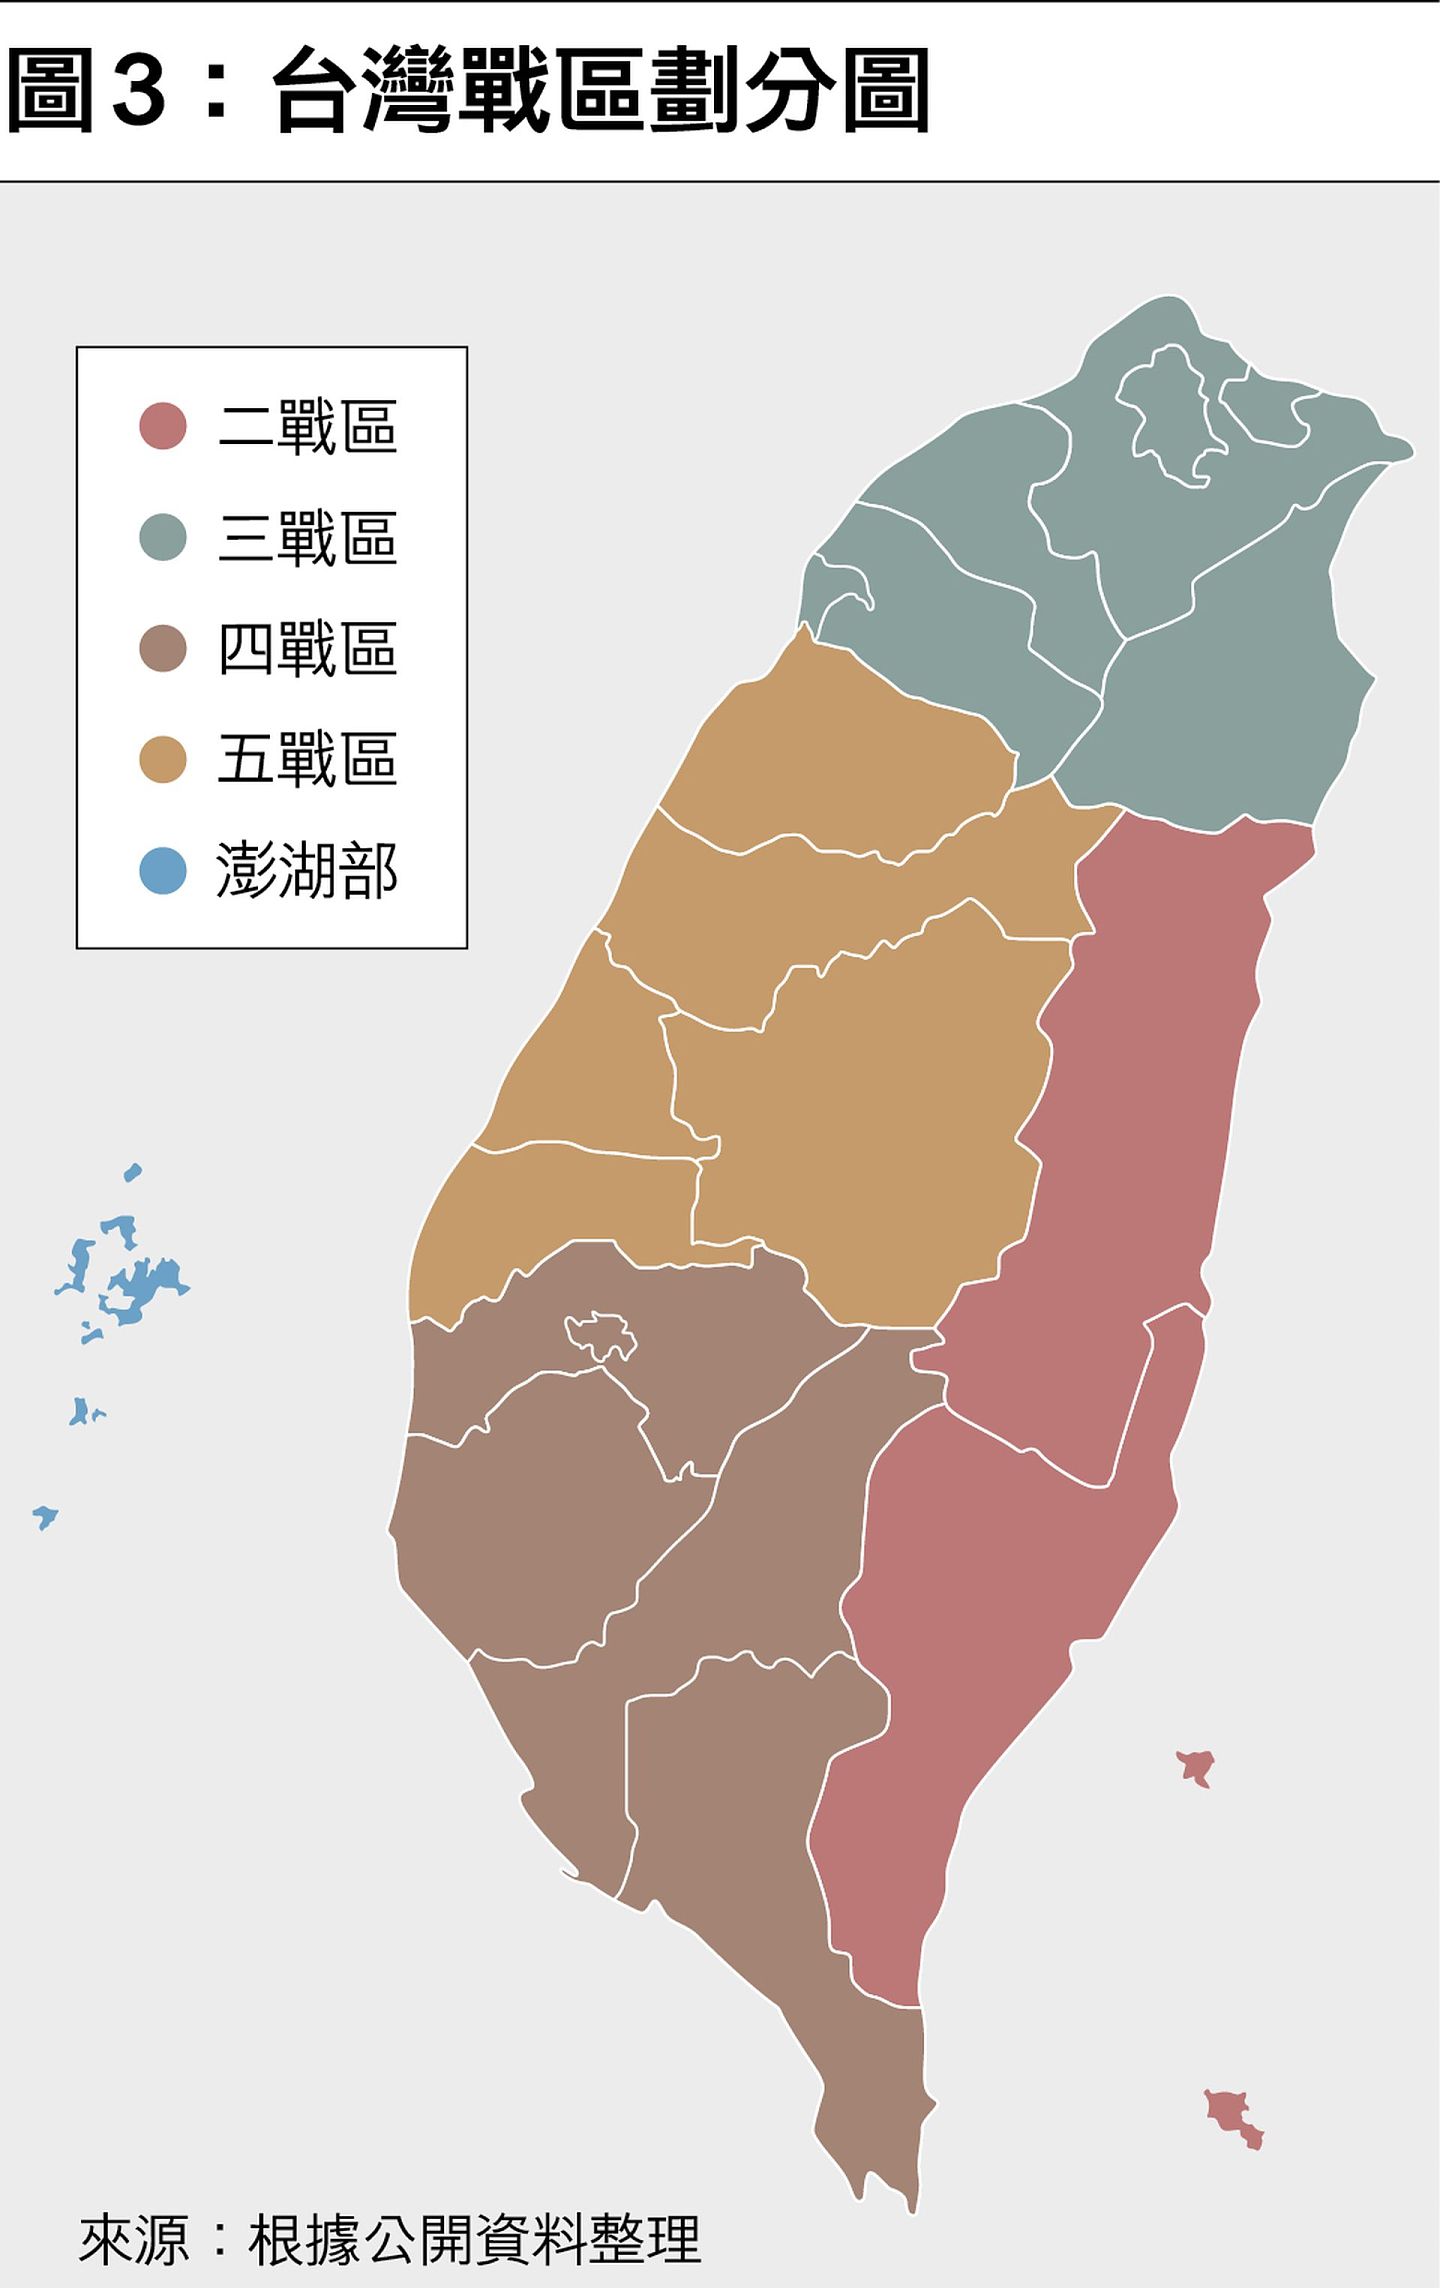 台湾战区划分图。（多维新闻制作）